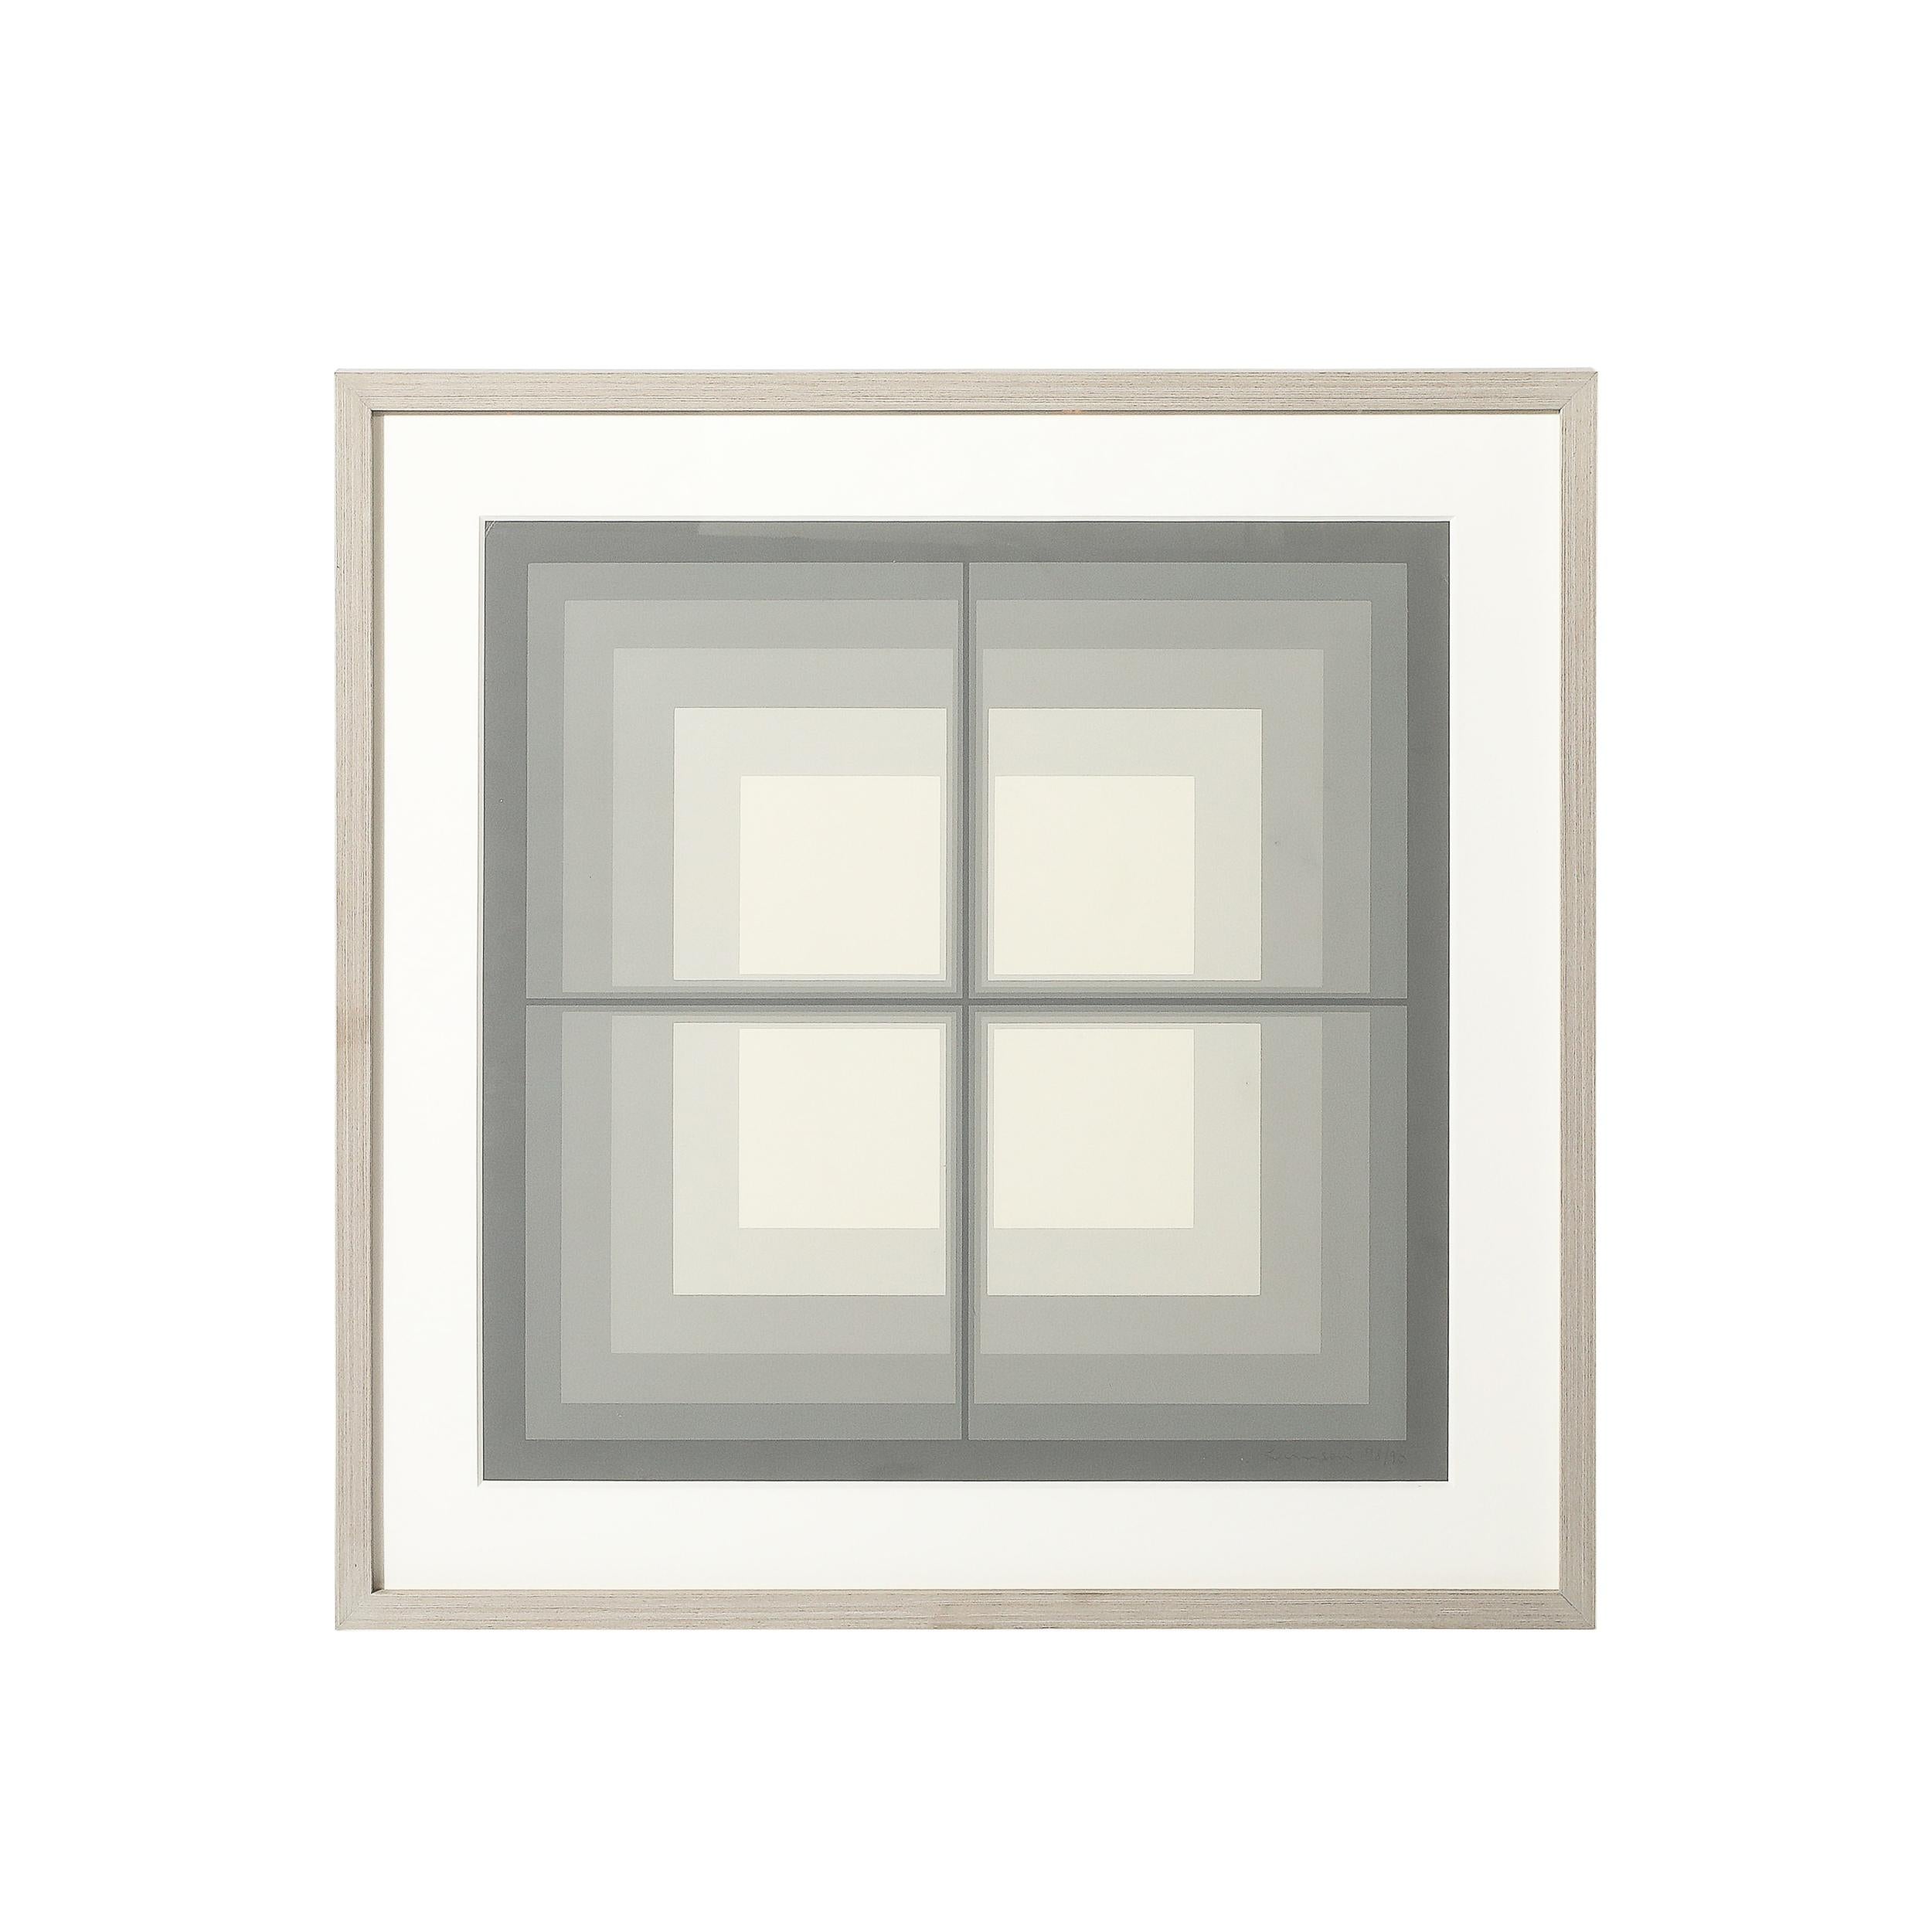 Dieser brillant präzise und raffinierte abstrakte geometrische Siebdruck der Jahrhundertmitte in grauen Quadraten, Edition 78/90, stammt von Mon Levinson aus den Vereinigten Staaten von 1969. Die quadratische Komposition ruht in einem speziell